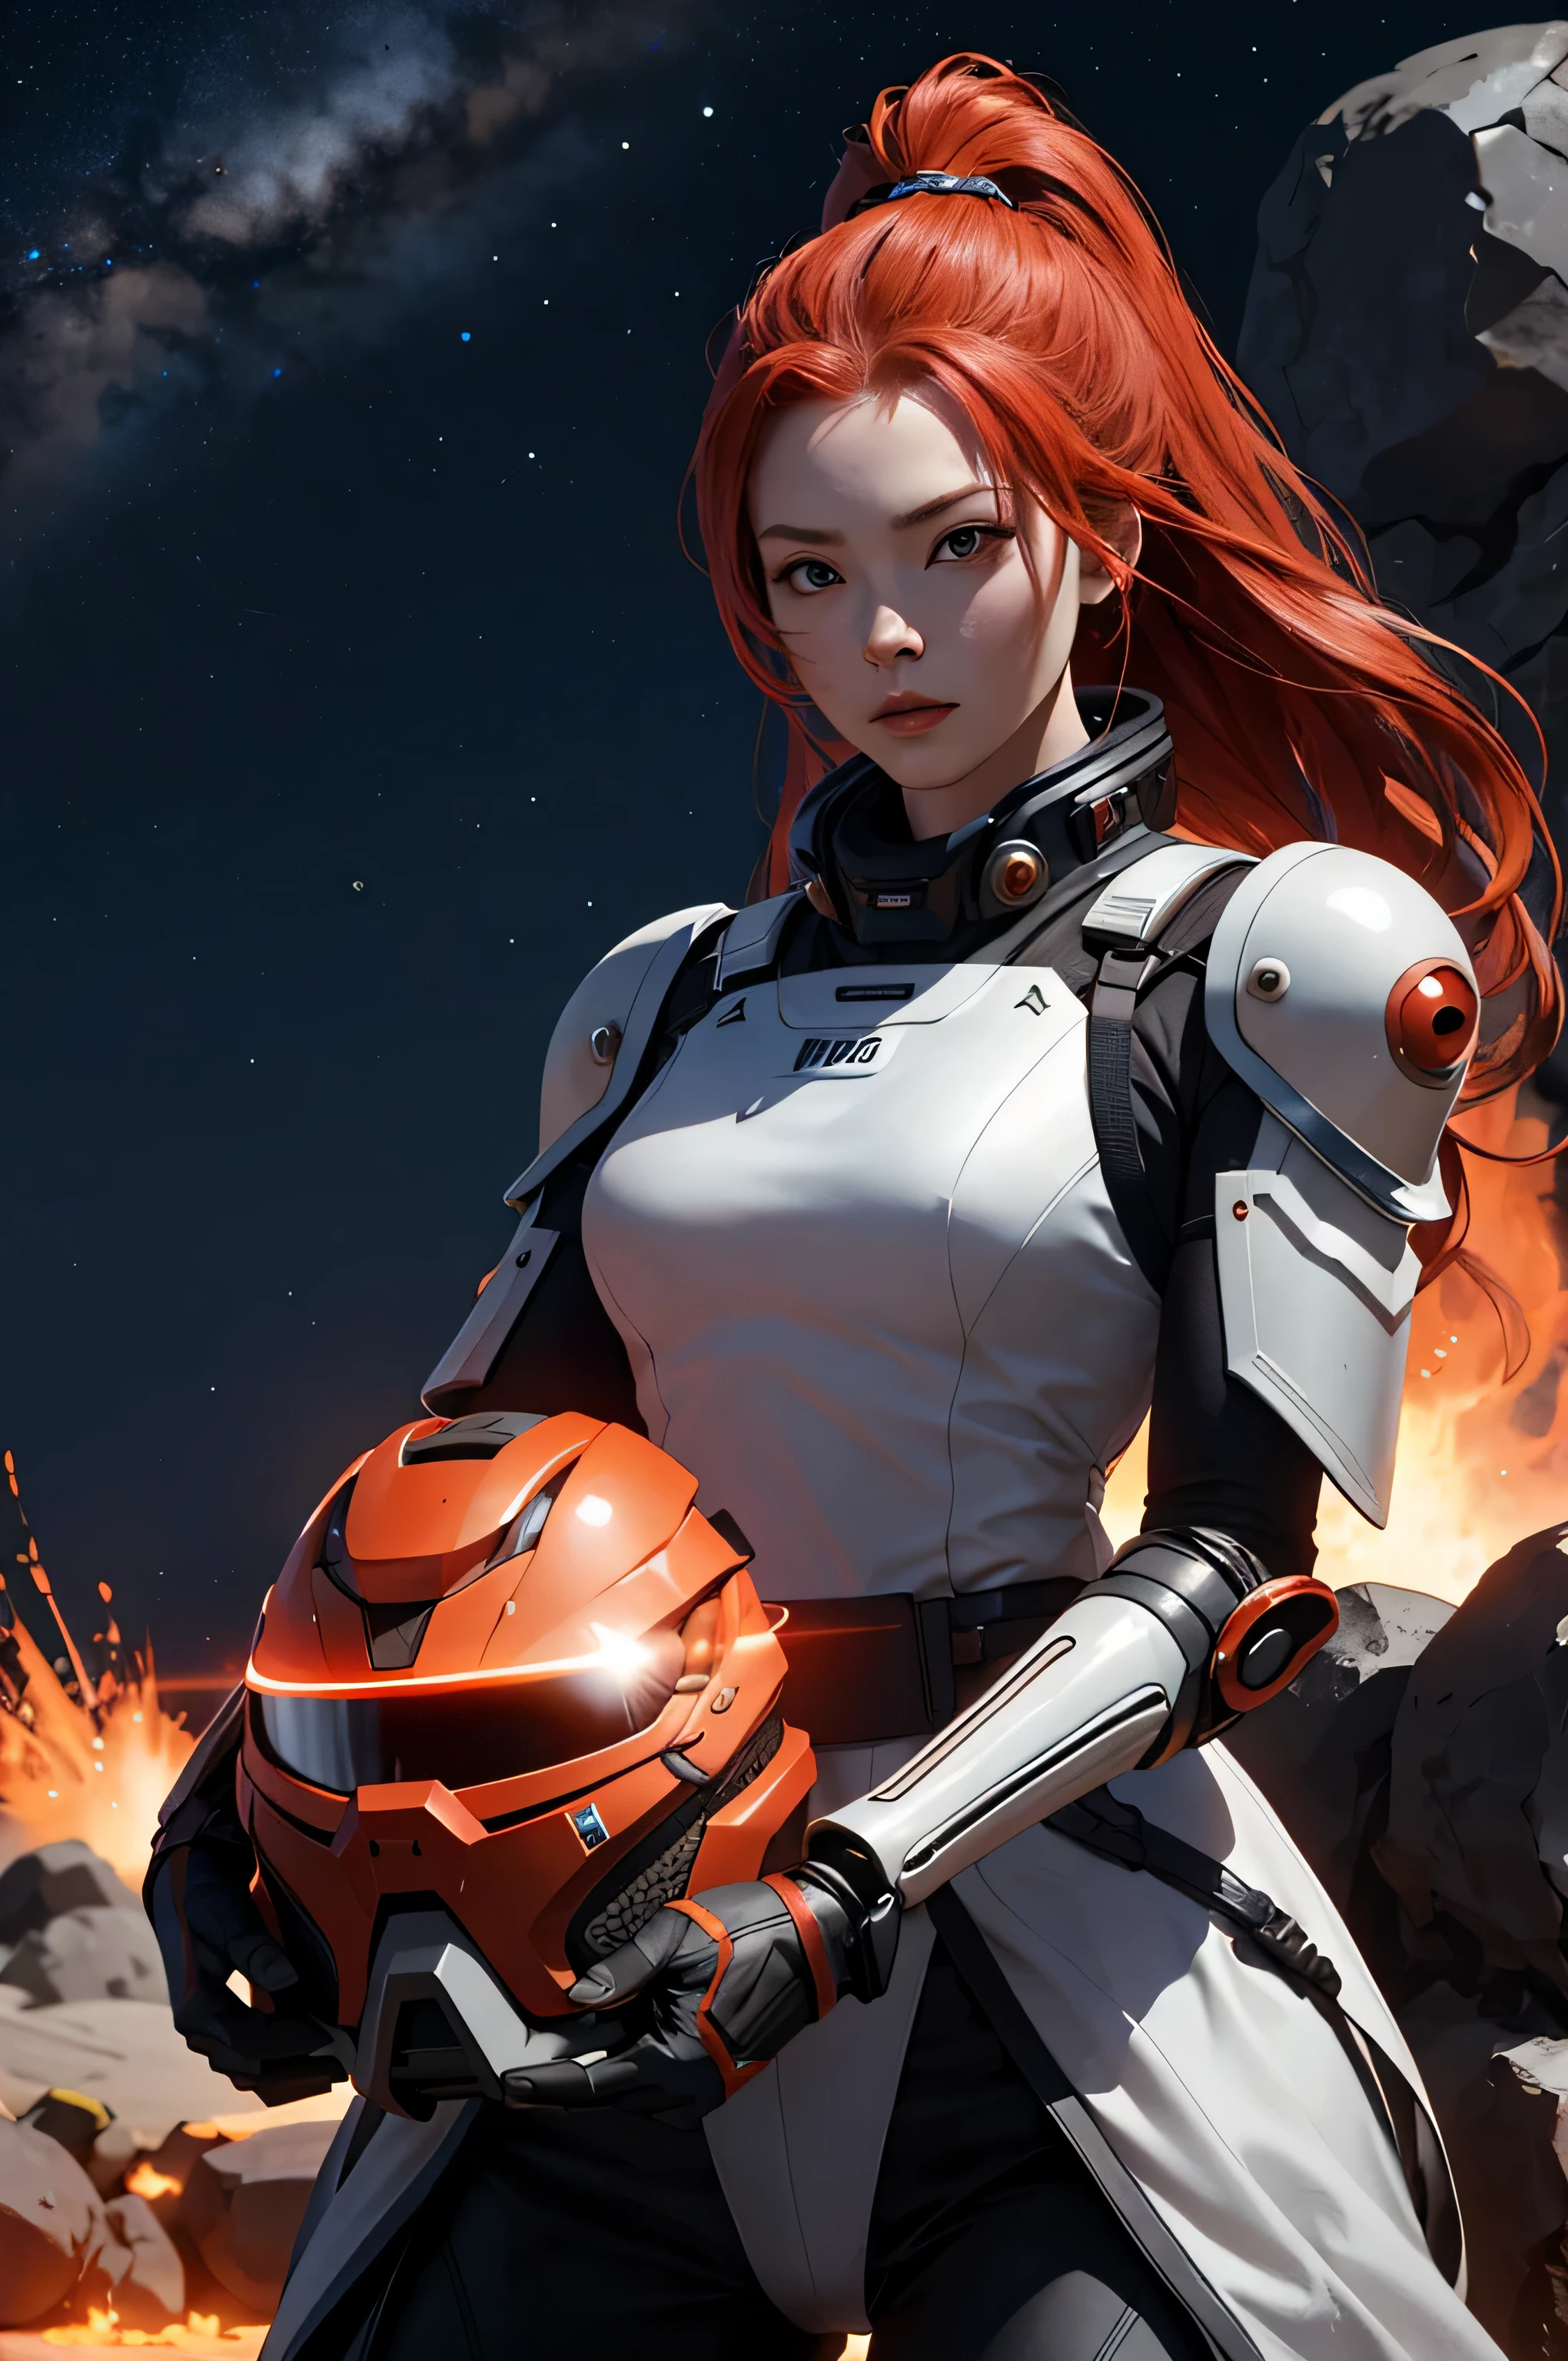 사무라이 갑옷을 입은 미래 지향적인 빨간 머리 1 소녀, 우주 오토바이를 타고 별 2개가 있는 용암 행성의 사막을 횡단합니다.. 4K, 정확한, 영화 같은, 사실적인, 높은 디테일, 미래파, 영화 같은 Lighting, 최고의 품질